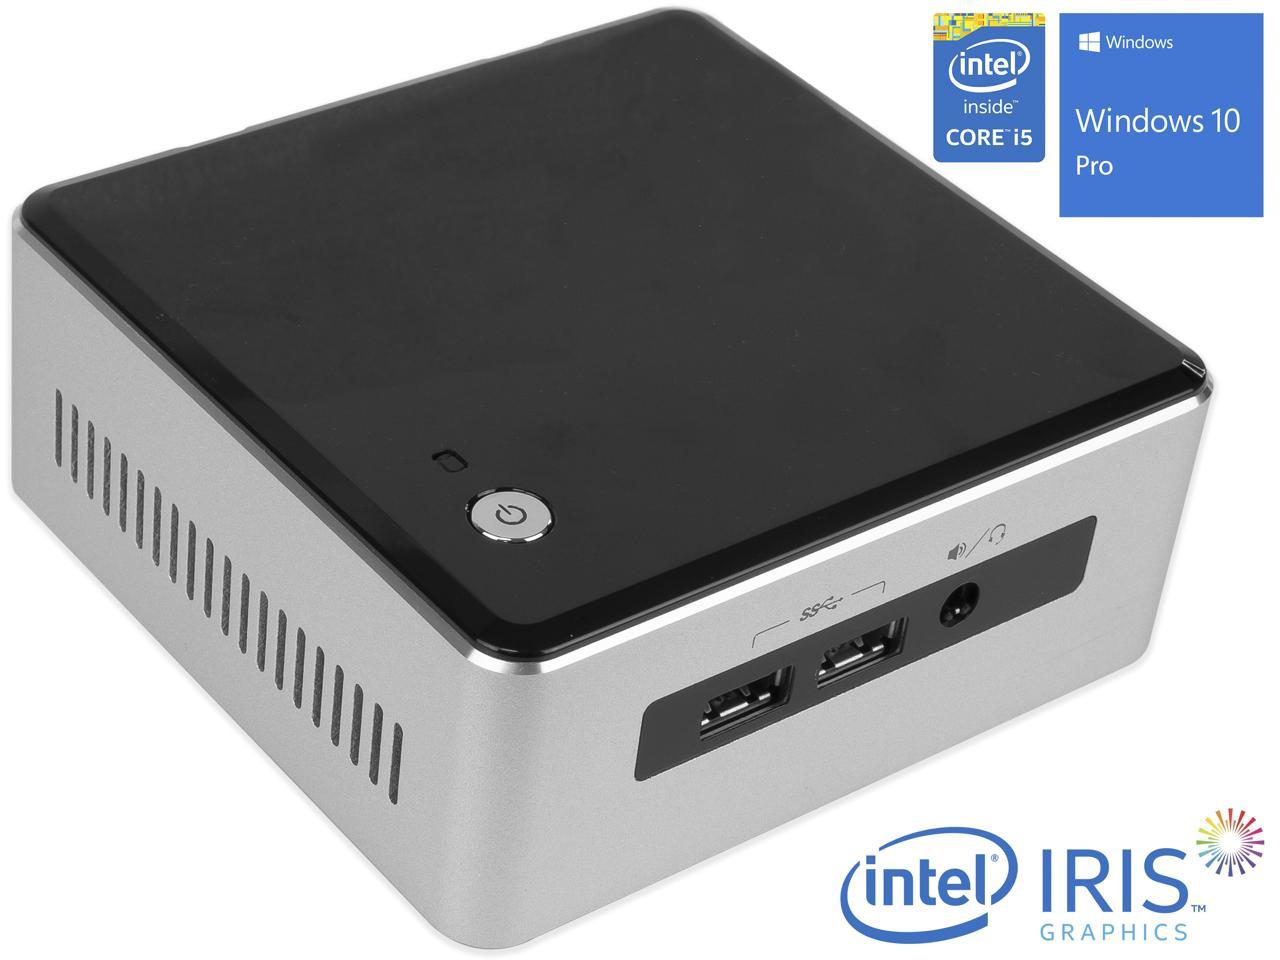 Intel NUC5i5RYH Mini PC, Intel Core i5-5250U Upto 2.7GHz, 8GB RAM, 256GB NVMe SSD + 1TB HDD, Micro HDMI, Mini DisplayPort, Wi-Fi, Bluetooth, Windows 10 Pro